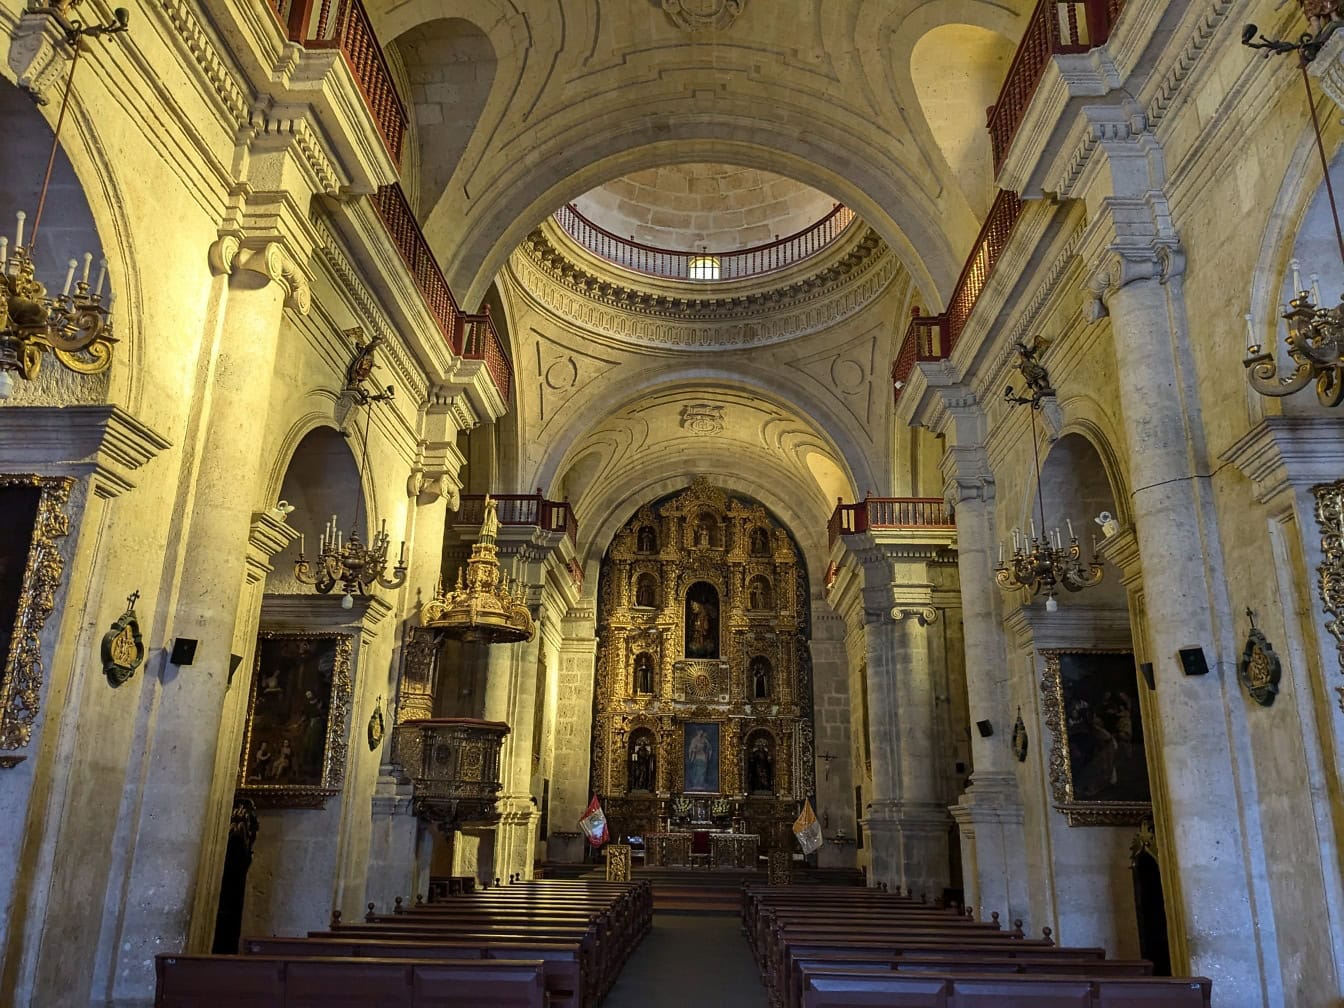 Wnętrze w stylu barokowym kościoła katolickiego Towarzystwa Jezusowego w Arequipie w Peru z ozdobnym ołtarzem